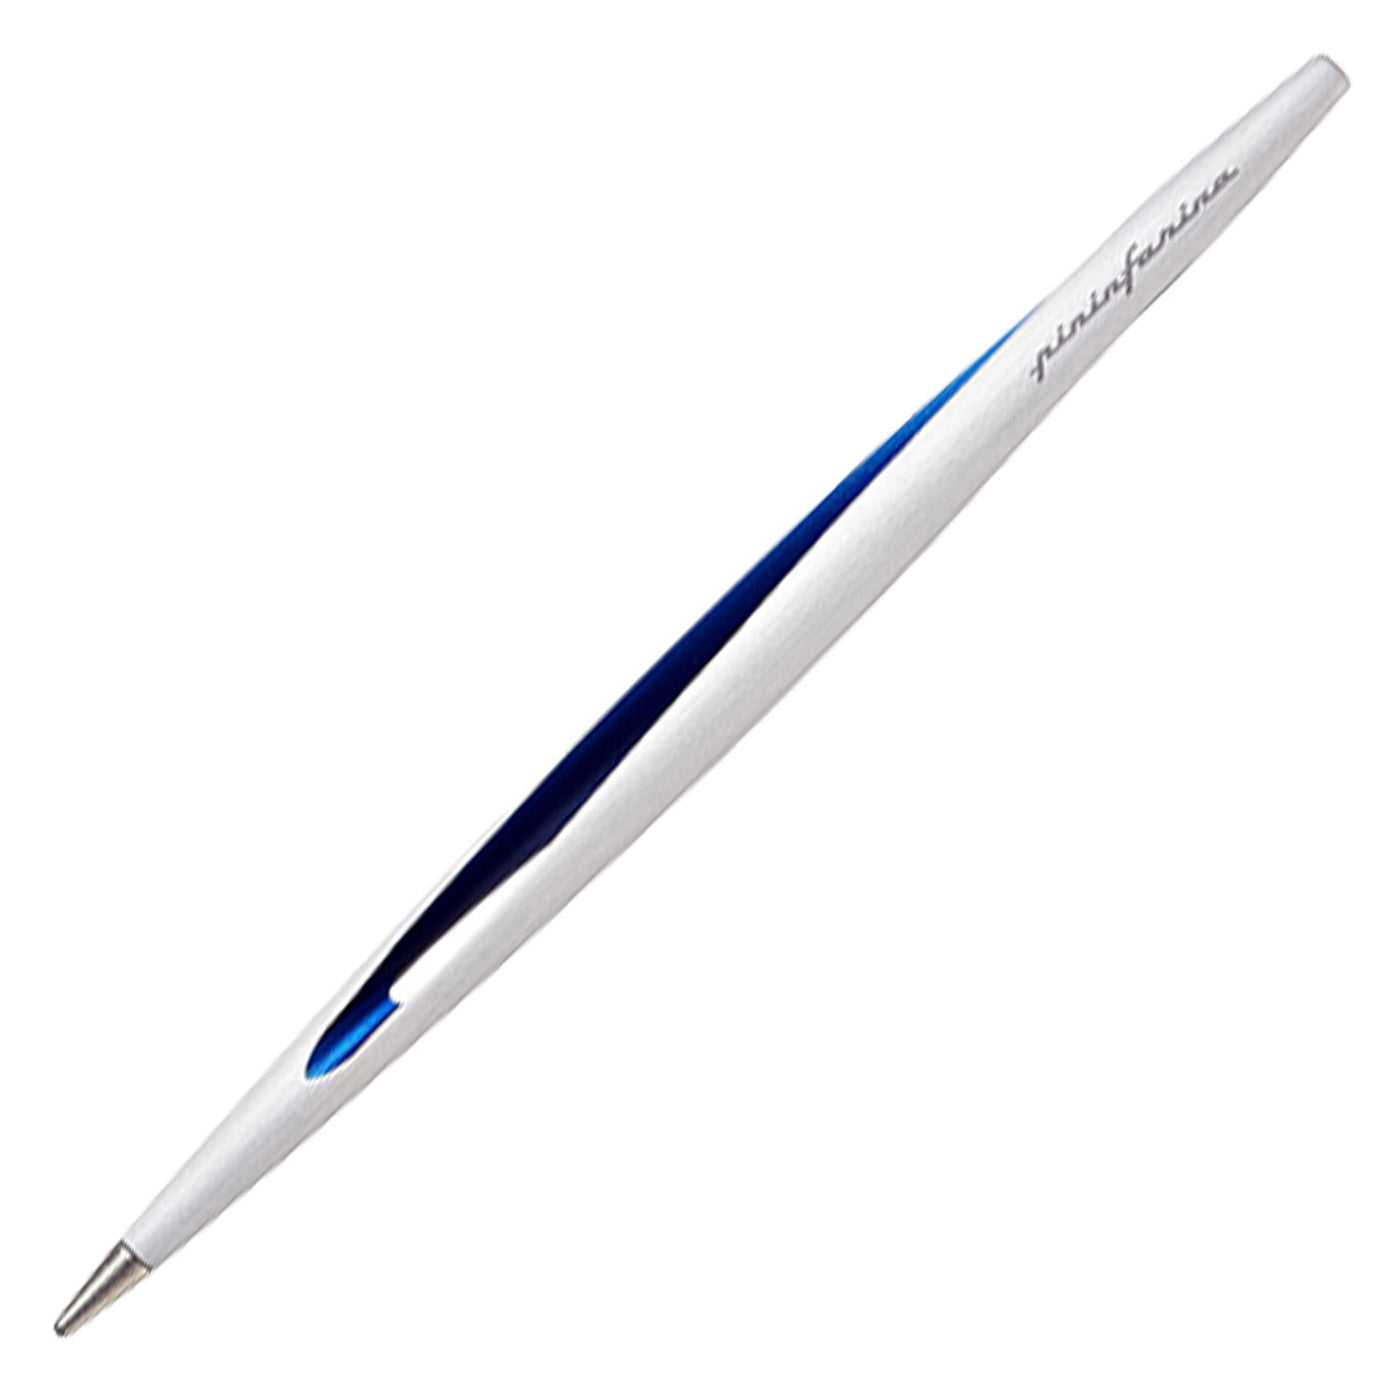 Pininfarina Segno Aero Maserati Ethergraf Pencil - Blue 1